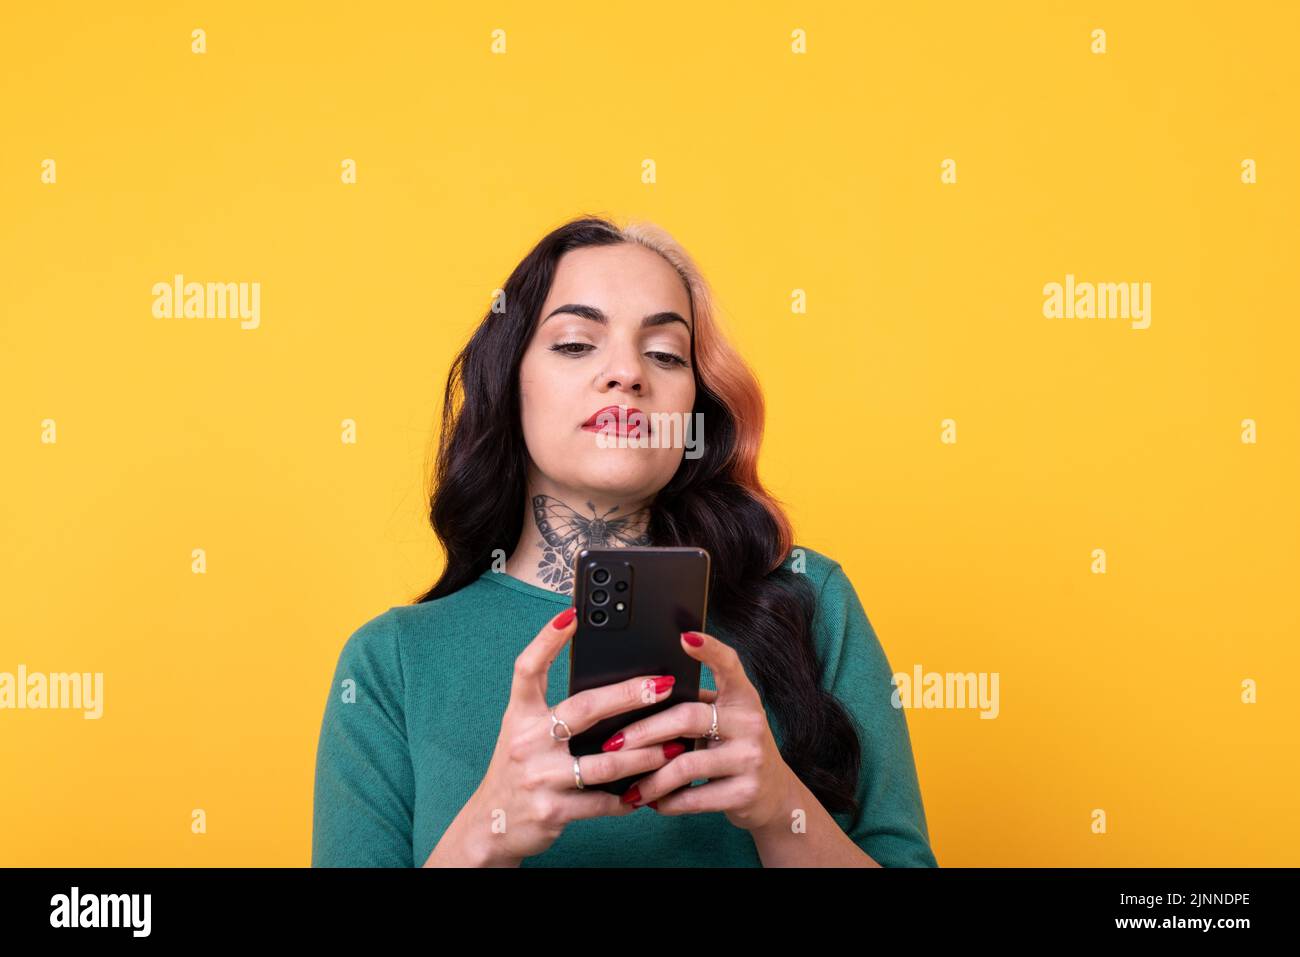 Portrait d'une femme attrayante utilisant un smartphone sur fond jaune. Copier l'espace Banque D'Images